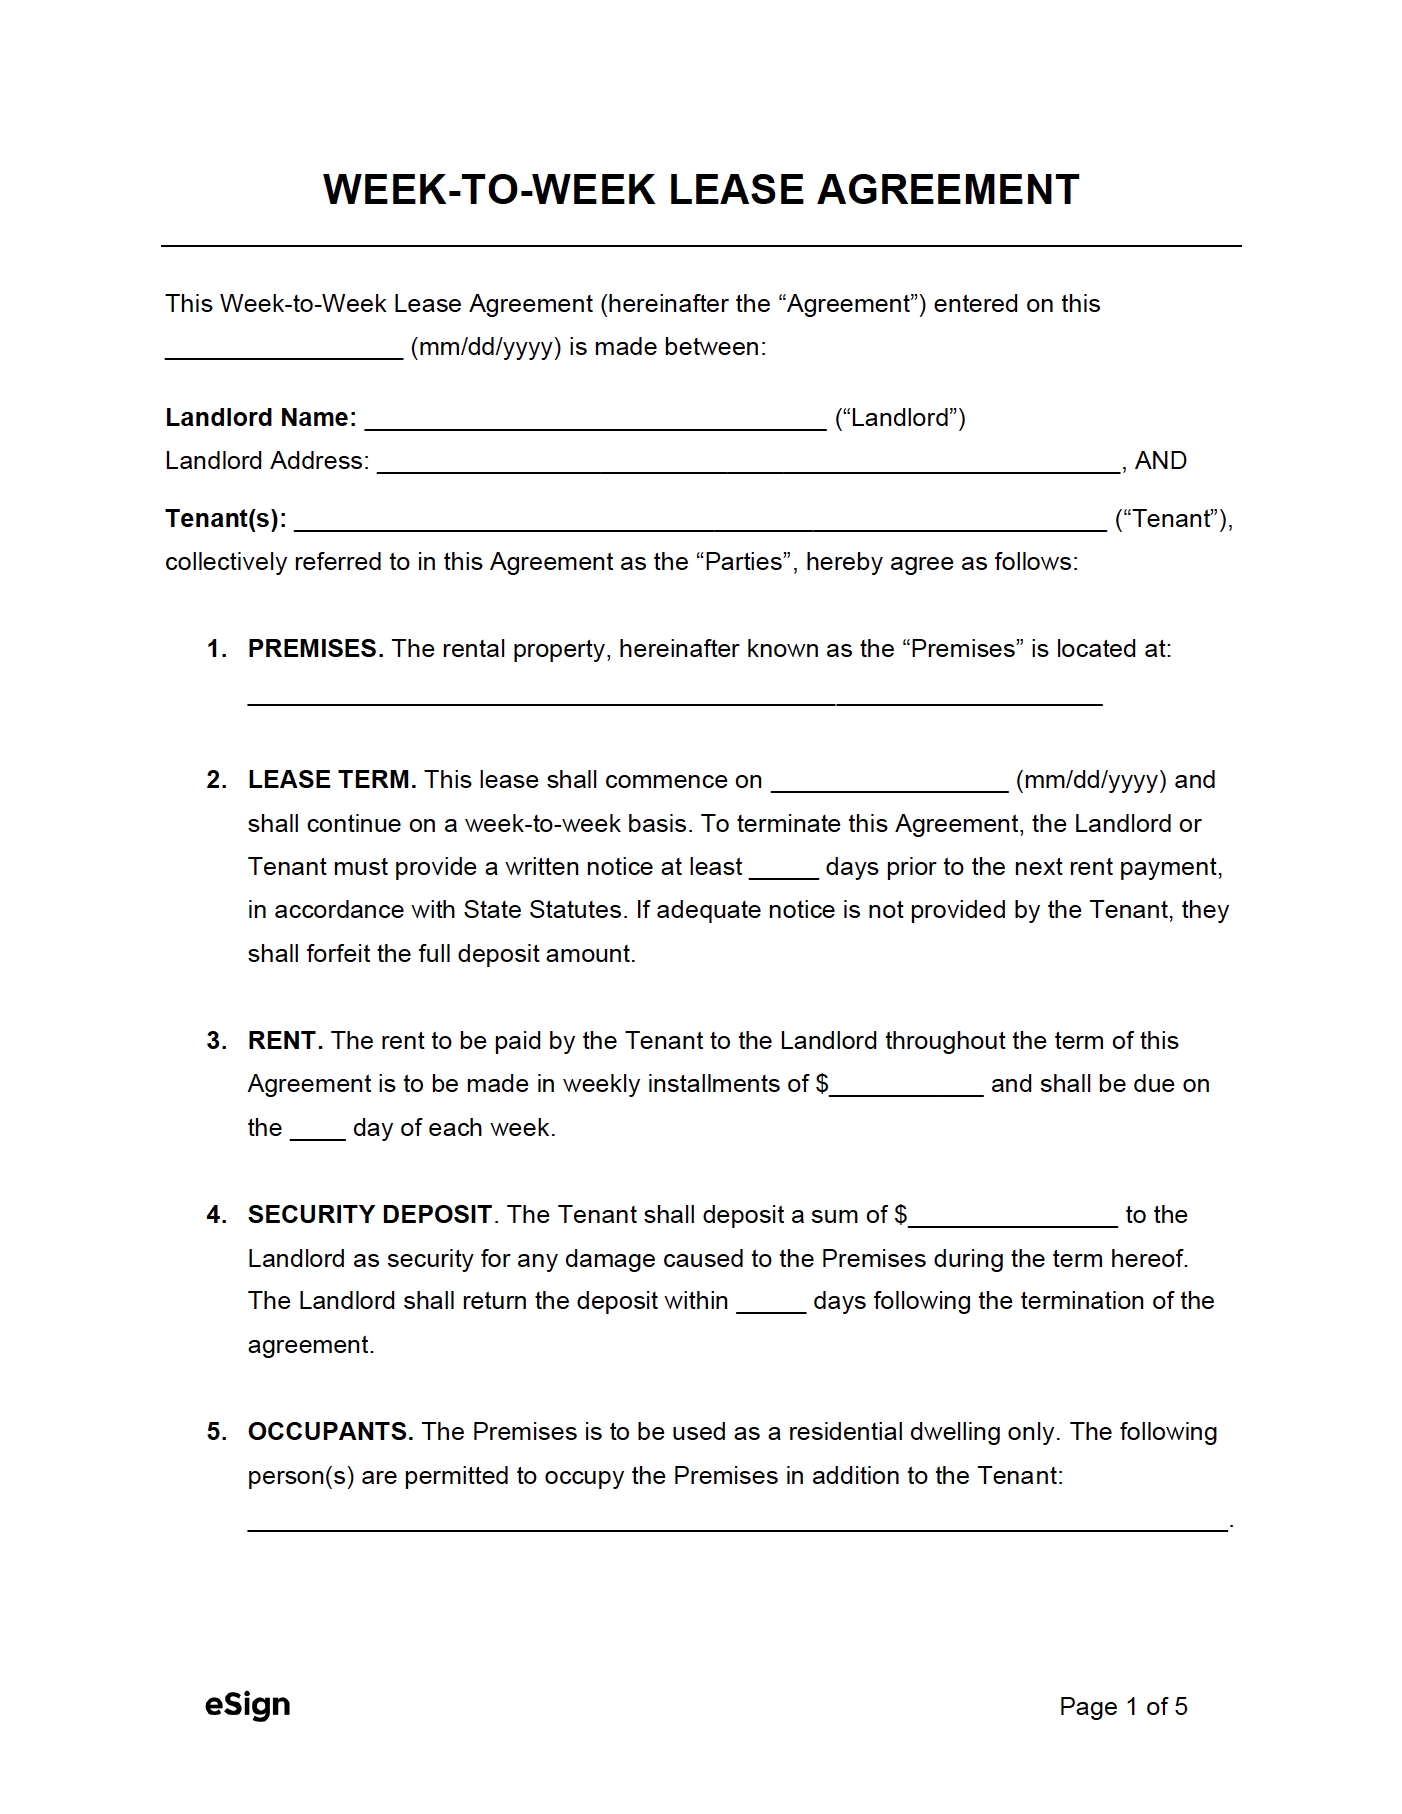 free weekly week to week rental agreement template pdf word